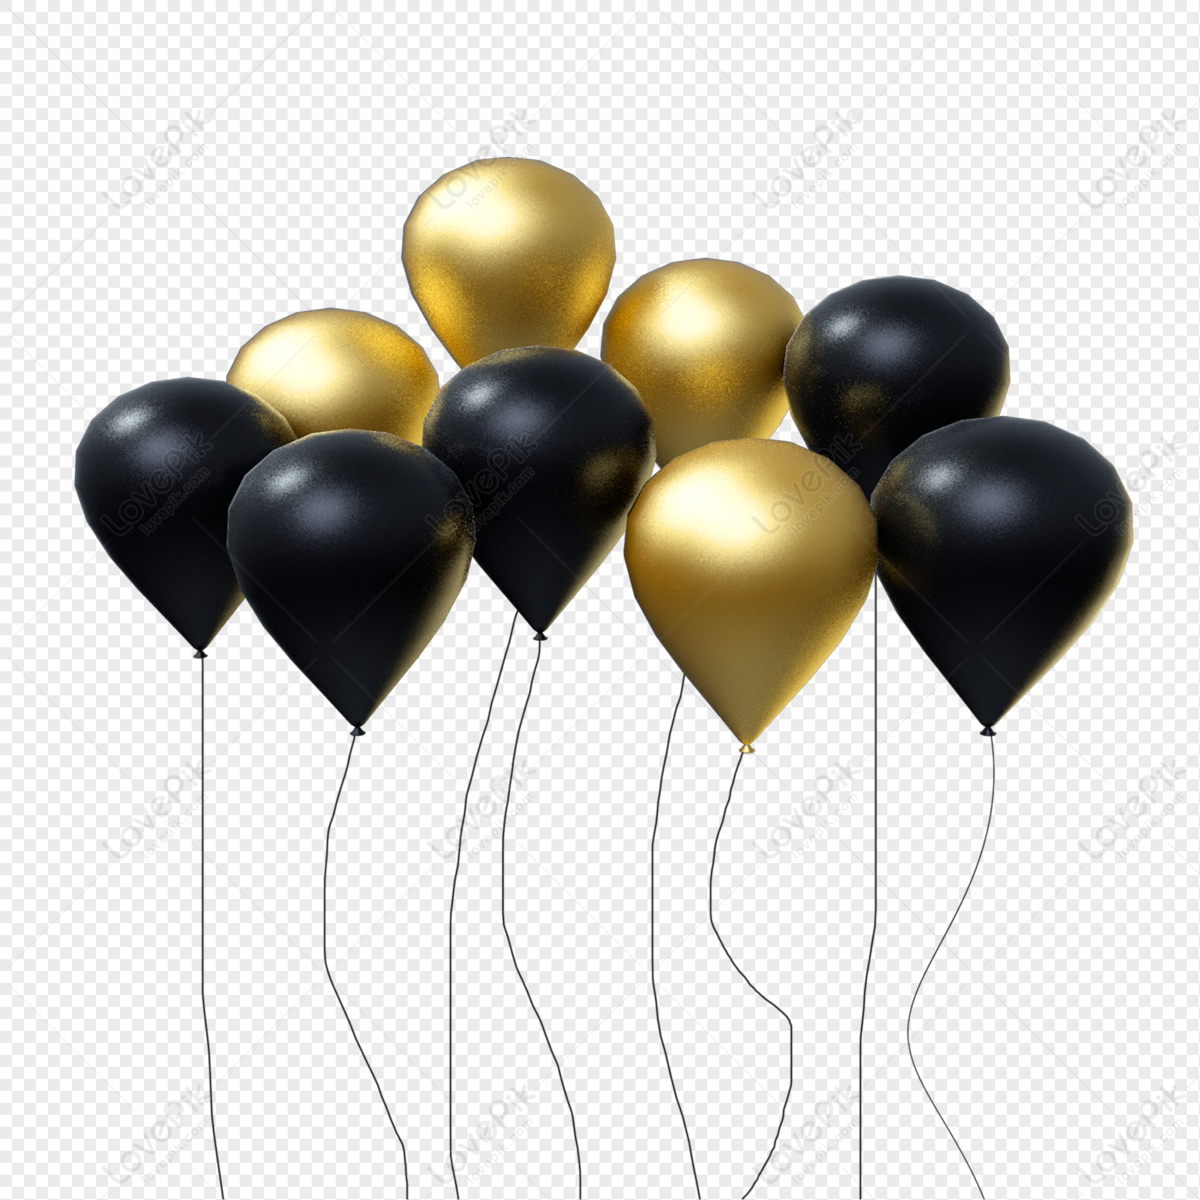 Photo de Ballons Décoratifs De Fond Affiche Or Noir, ballon d or noir, ballon  noir, ballons d argent Graphique images free download - Lovepik